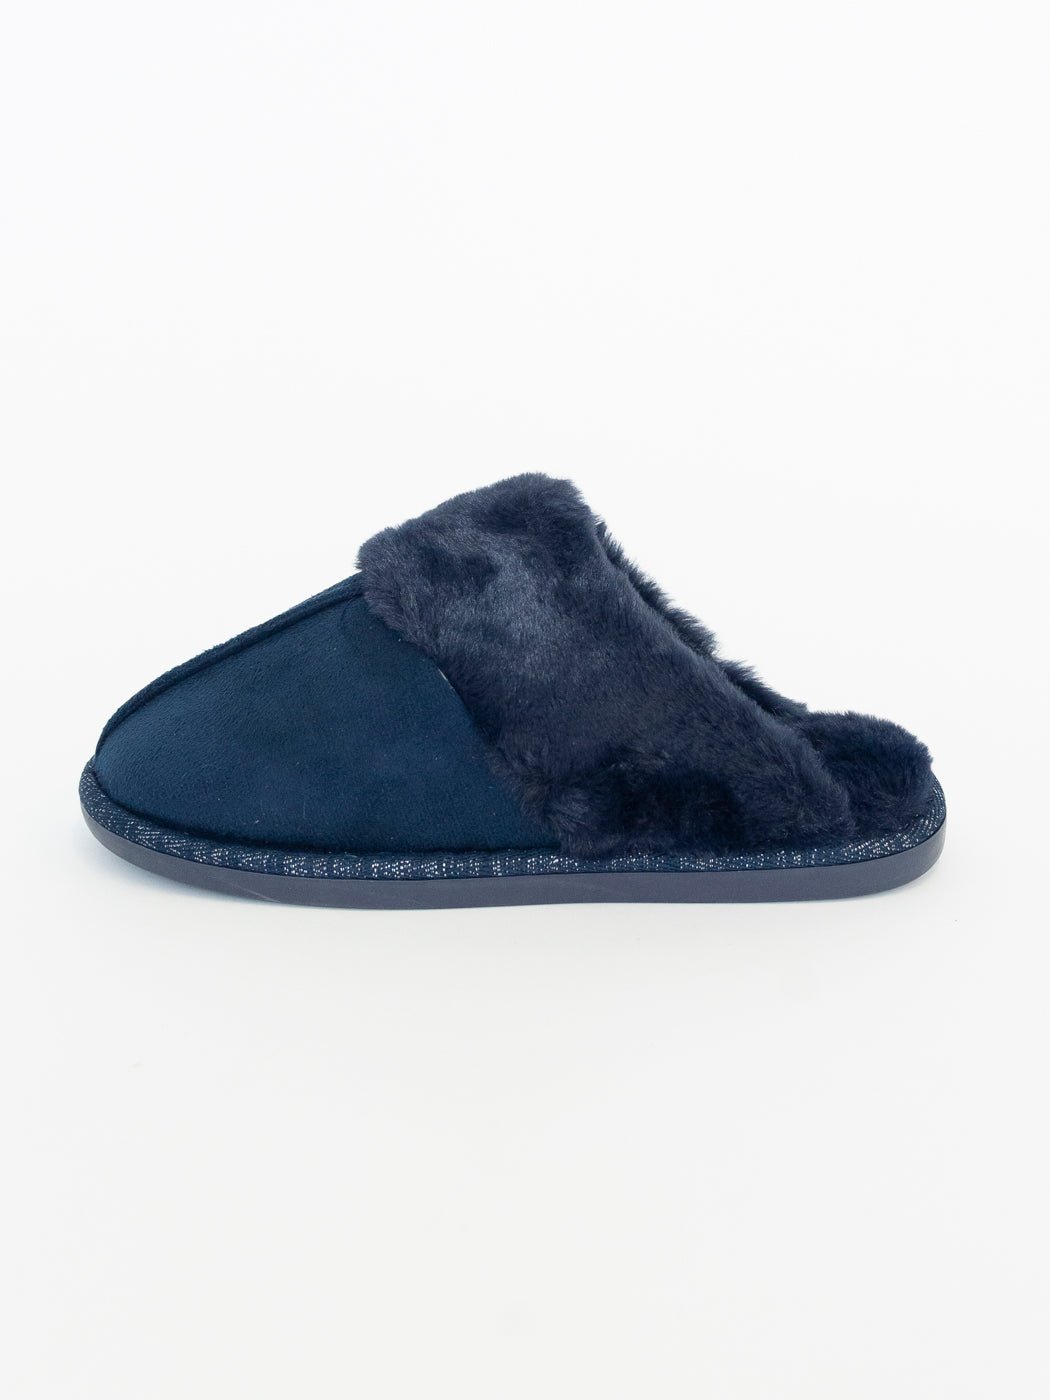 Joyce slippers galaxy blue - Online-Mode